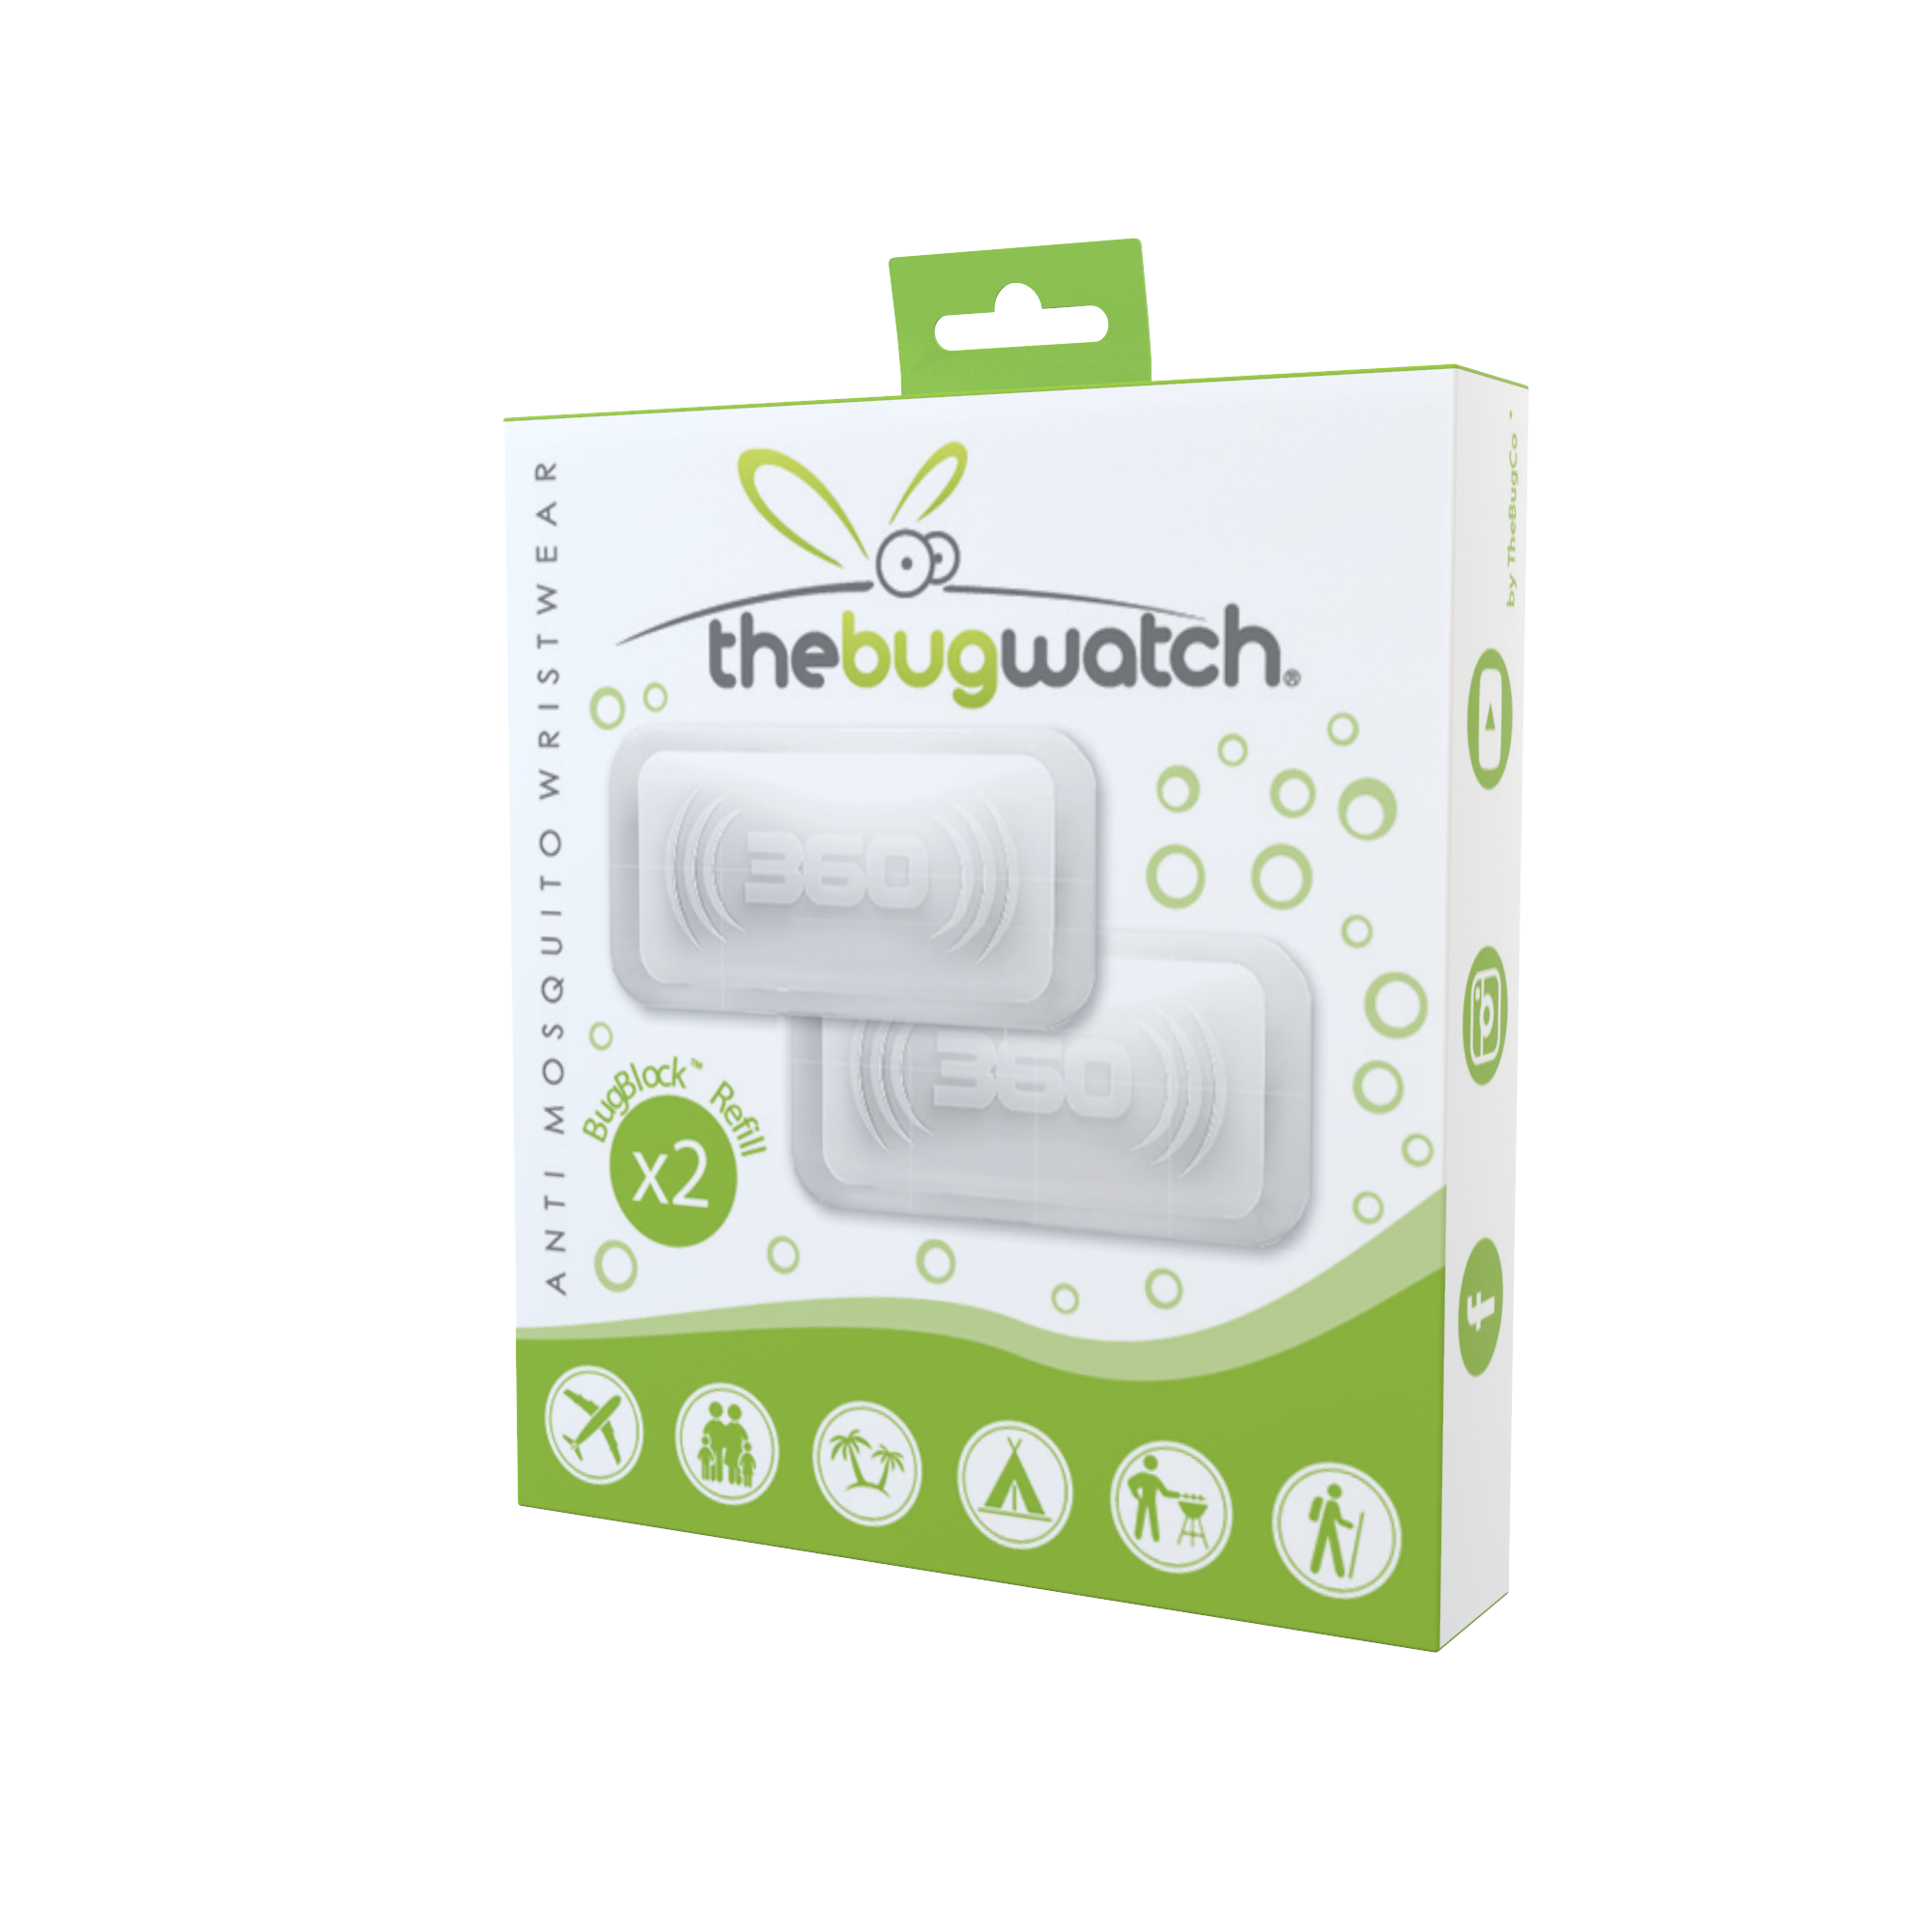 Bracelet anti-moustique pour enfant TheBugWatch Kids BugCo Super protection - Protège contre les moustiques et insectes - Repulsif à 360° - Bleu